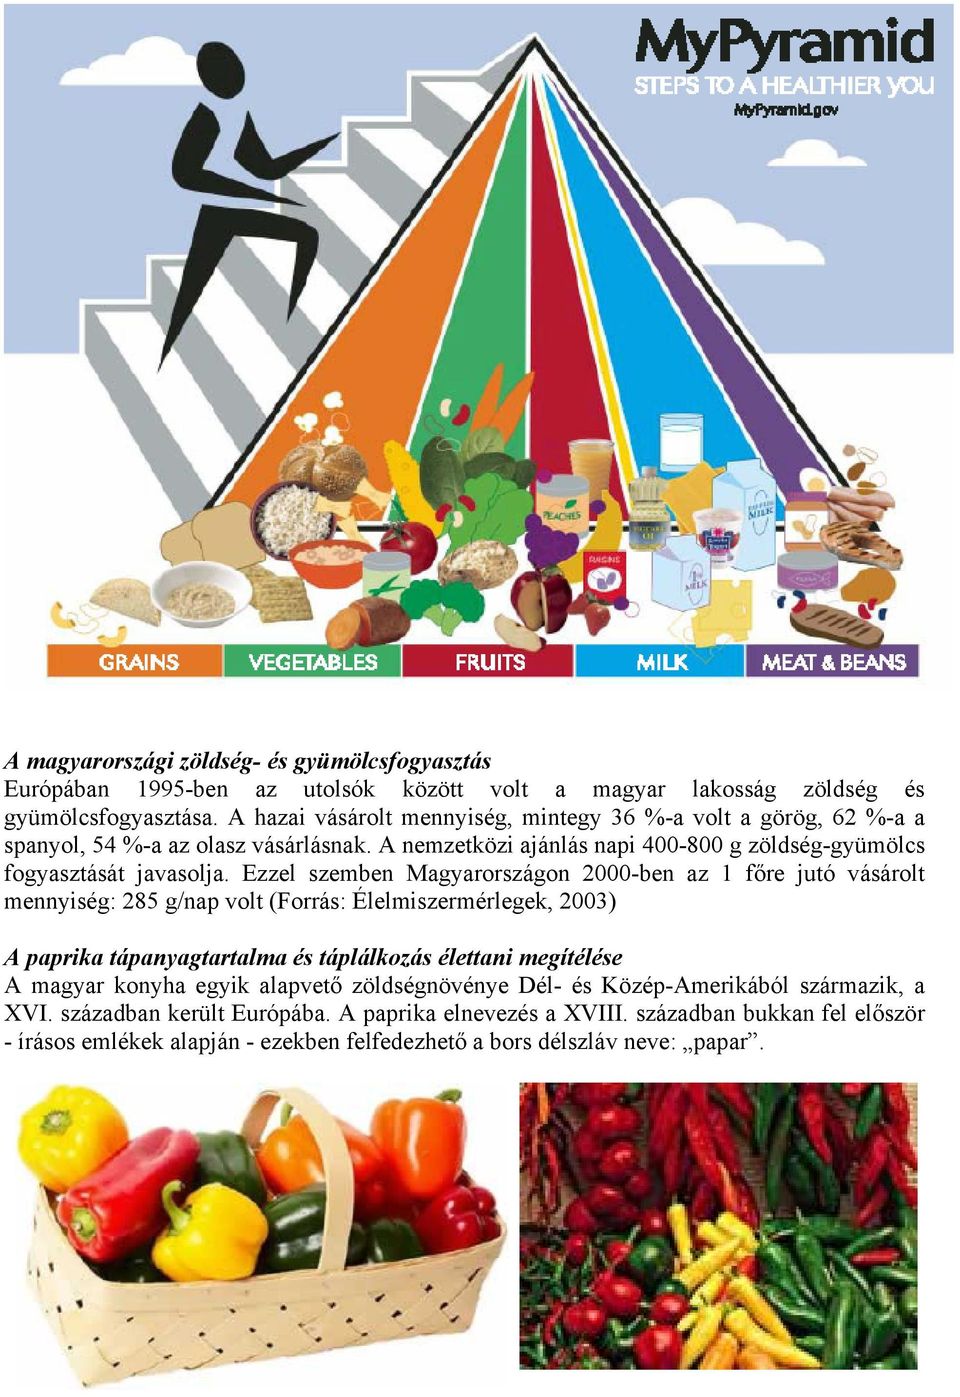 Ezzel szemben Magyarországon 2000-ben az 1 főre jutó vásárolt mennyiség: 285 g/nap volt (Forrás: Élelmiszermérlegek, 2003) A paprika tápanyagtartalma és táplálkozás élettani megítélése A